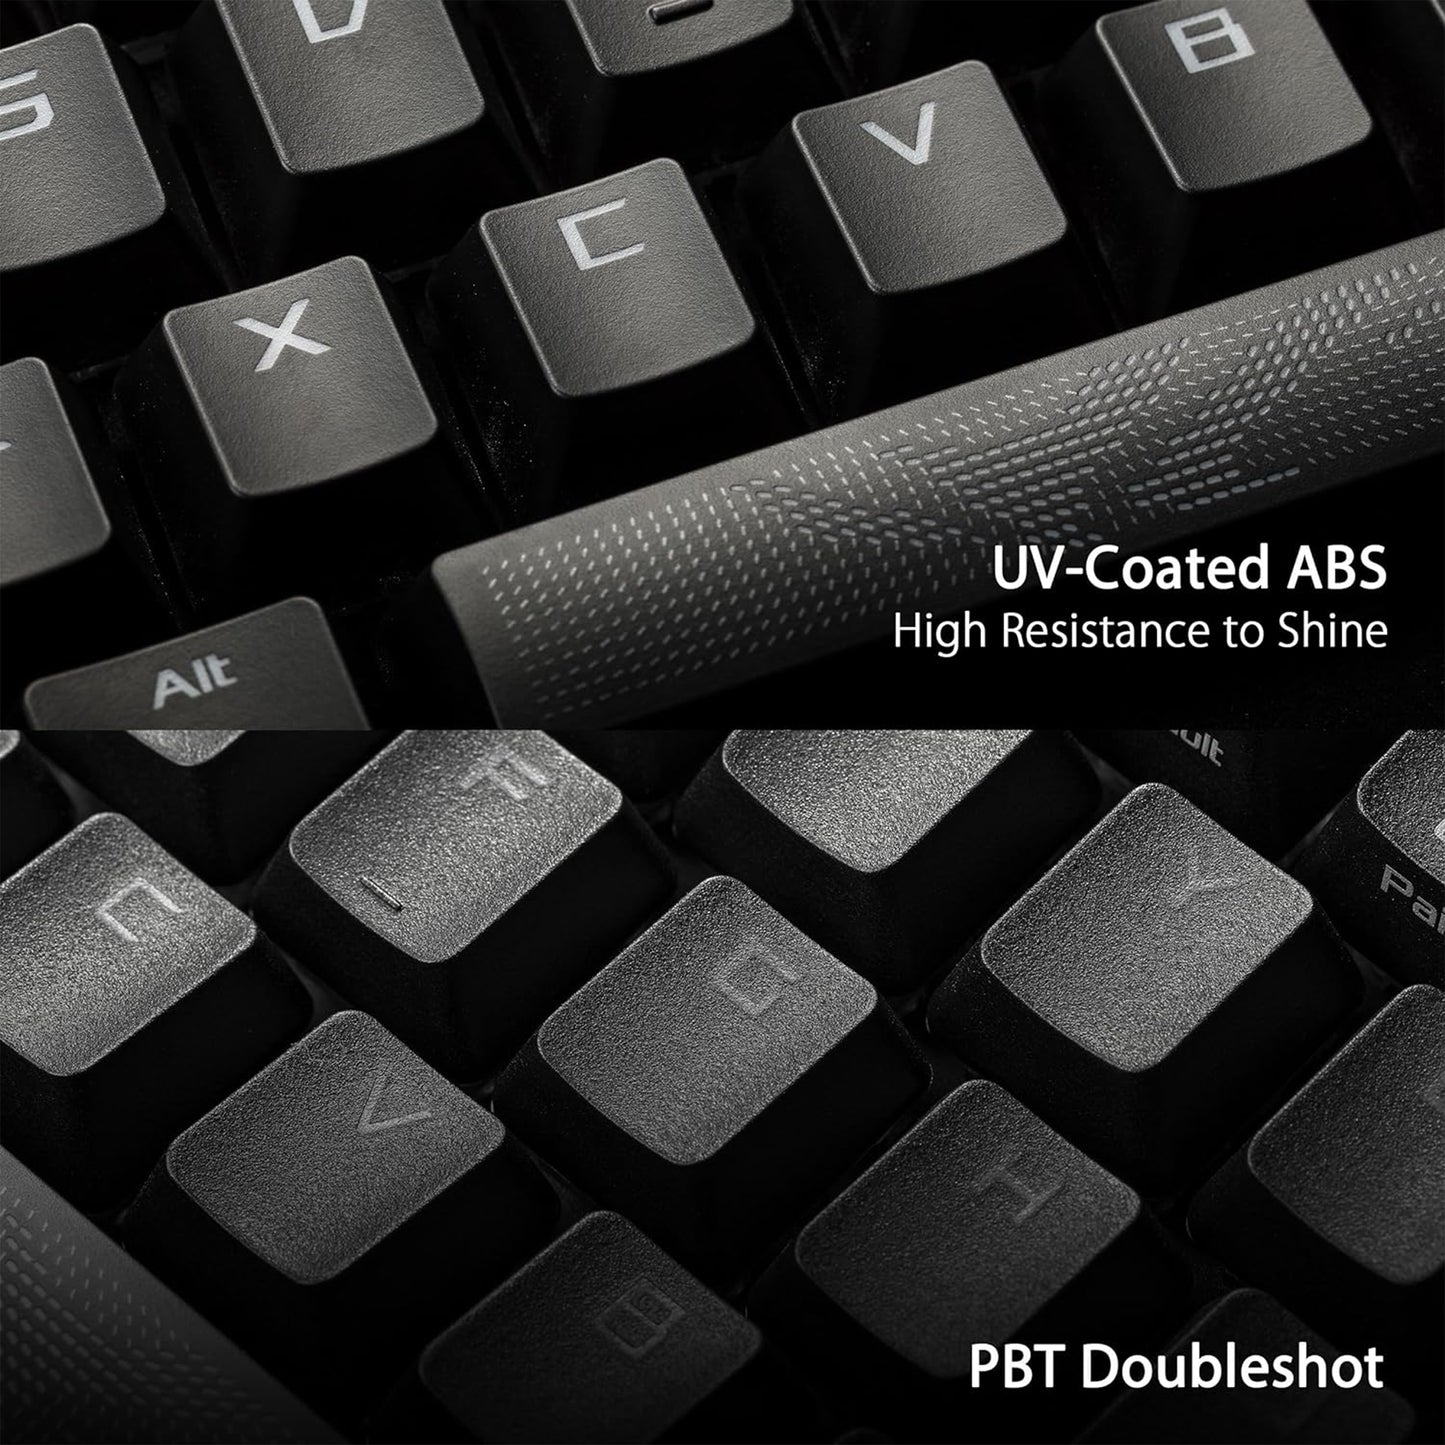 لوحة مفاتيح الألعاب اللاسلكية ASUS ROG Strix Scope II 96، اتصال ثلاثي الأوضاع، رغوة مخففة ووسادات ترطيب التبديل، مفاتيح ROG NX Snow المجهزة مسبقًا وقابلة للتبديل السريع، أغطية مفاتيح PBT، RGB-أسود 